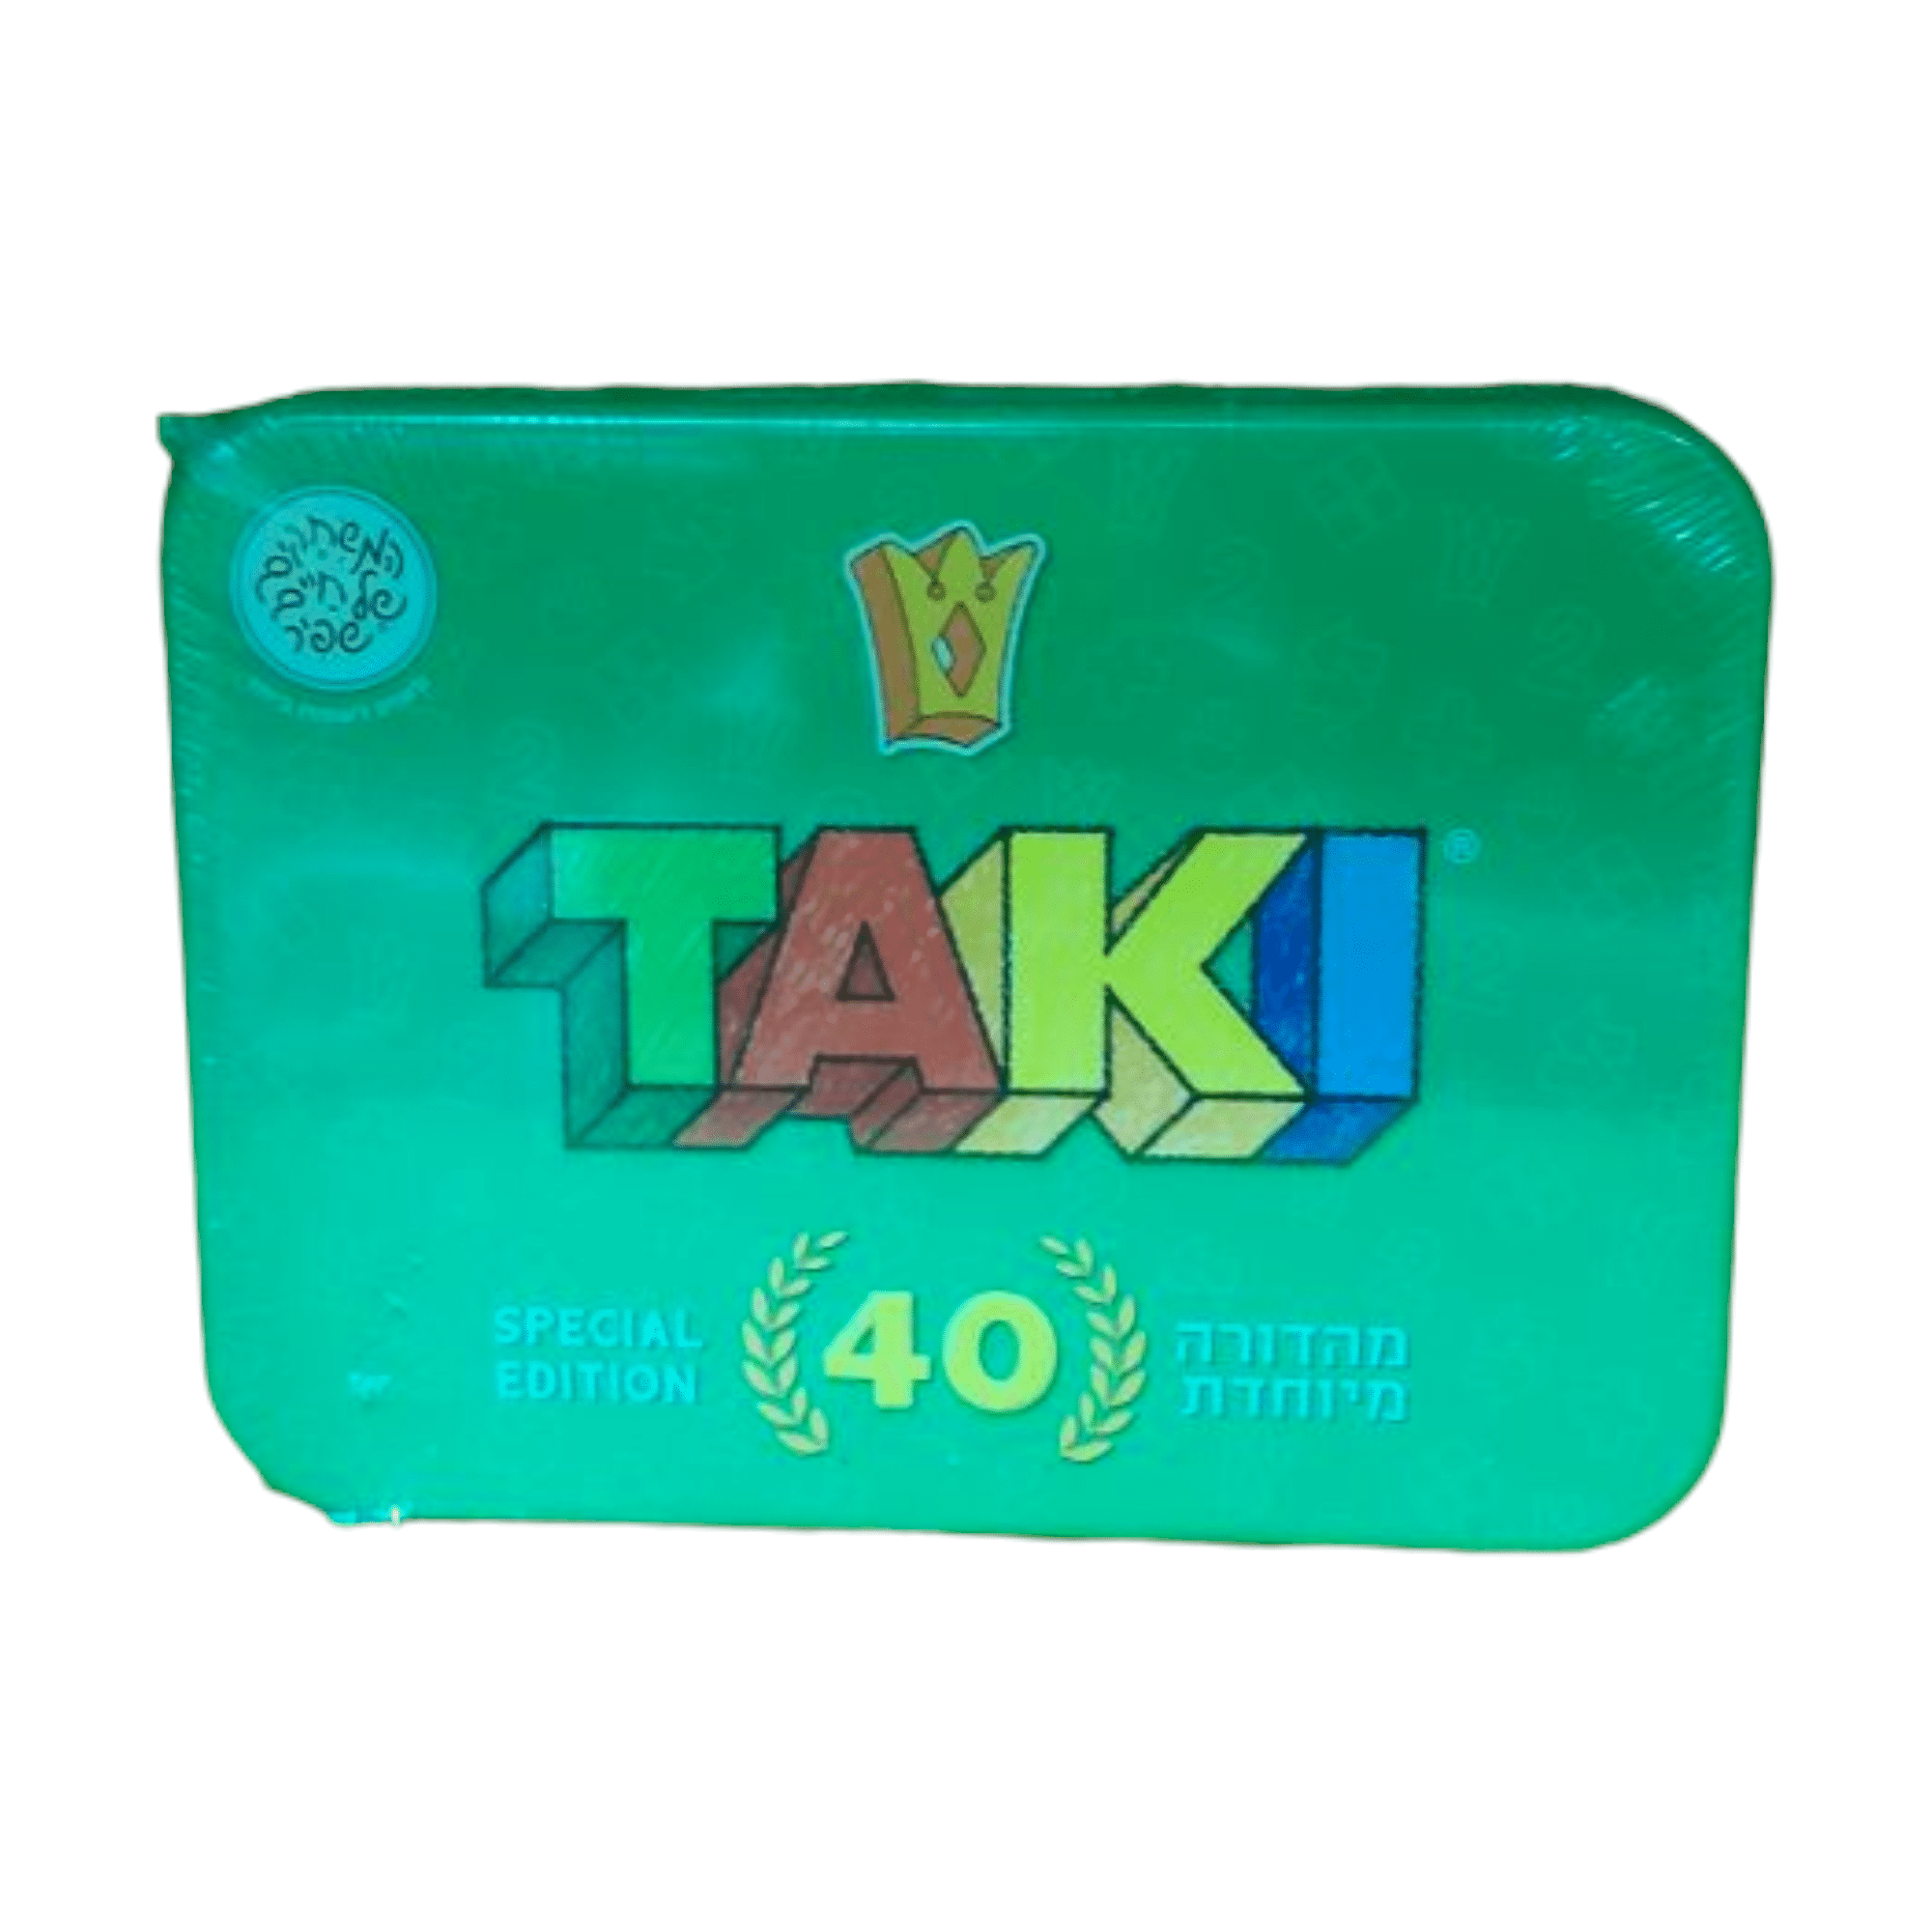 המשחקים של חיים שפיר – טאקי TAKI מהדורה מיוחדת במארז פח